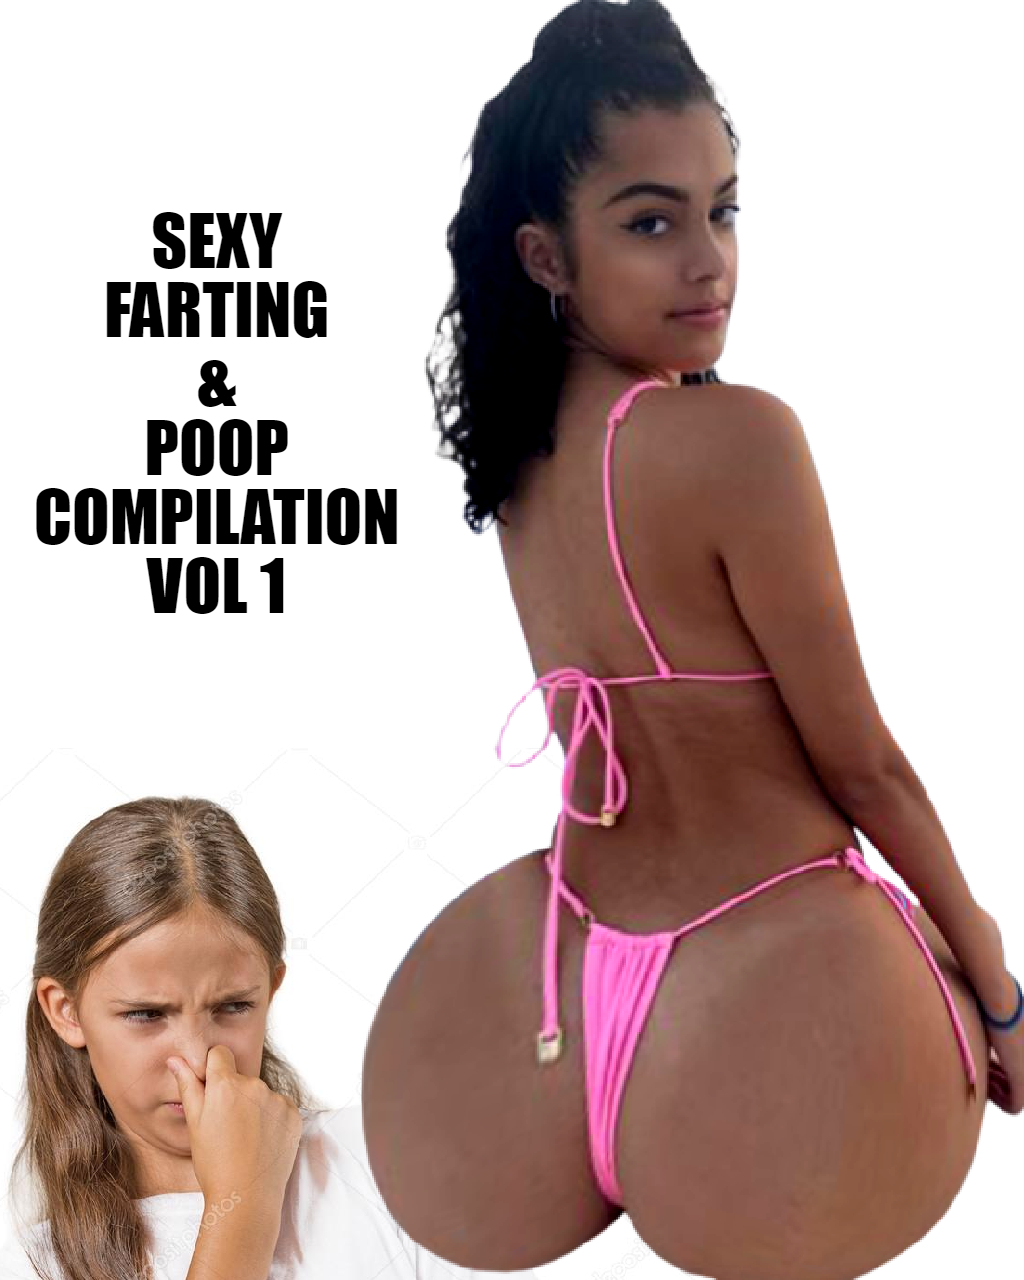 Farting & poop audio vol 1